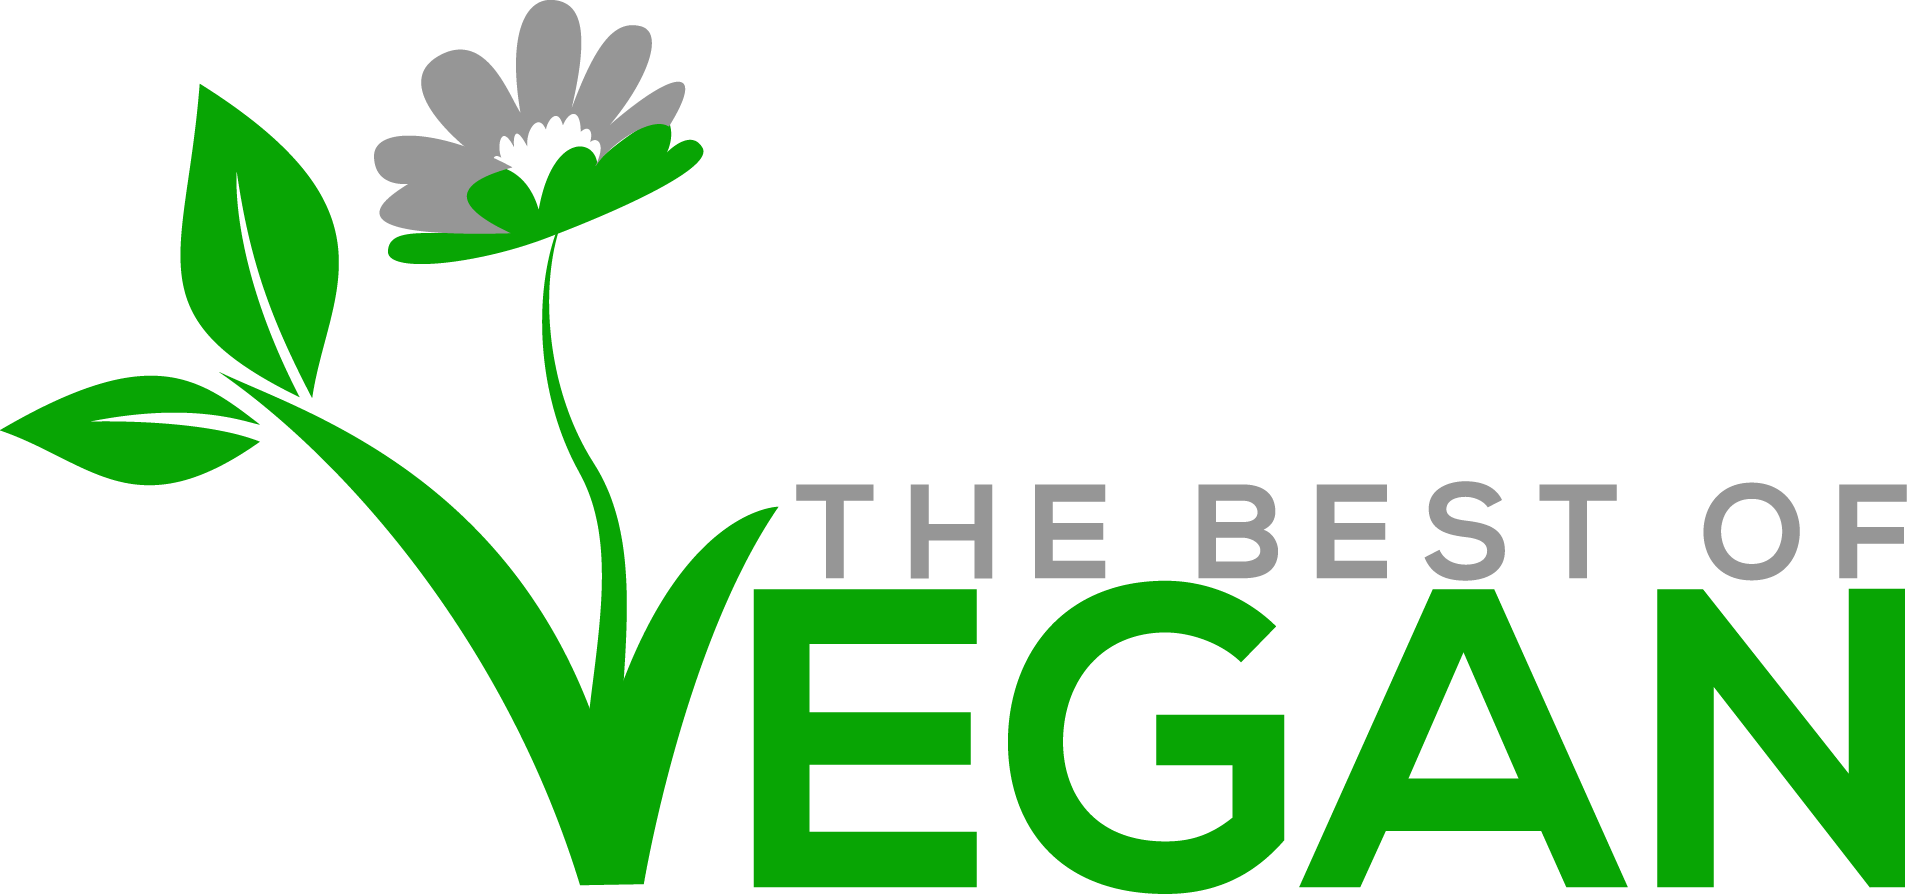 The Best Of Vegan - Veganism (1907x894)